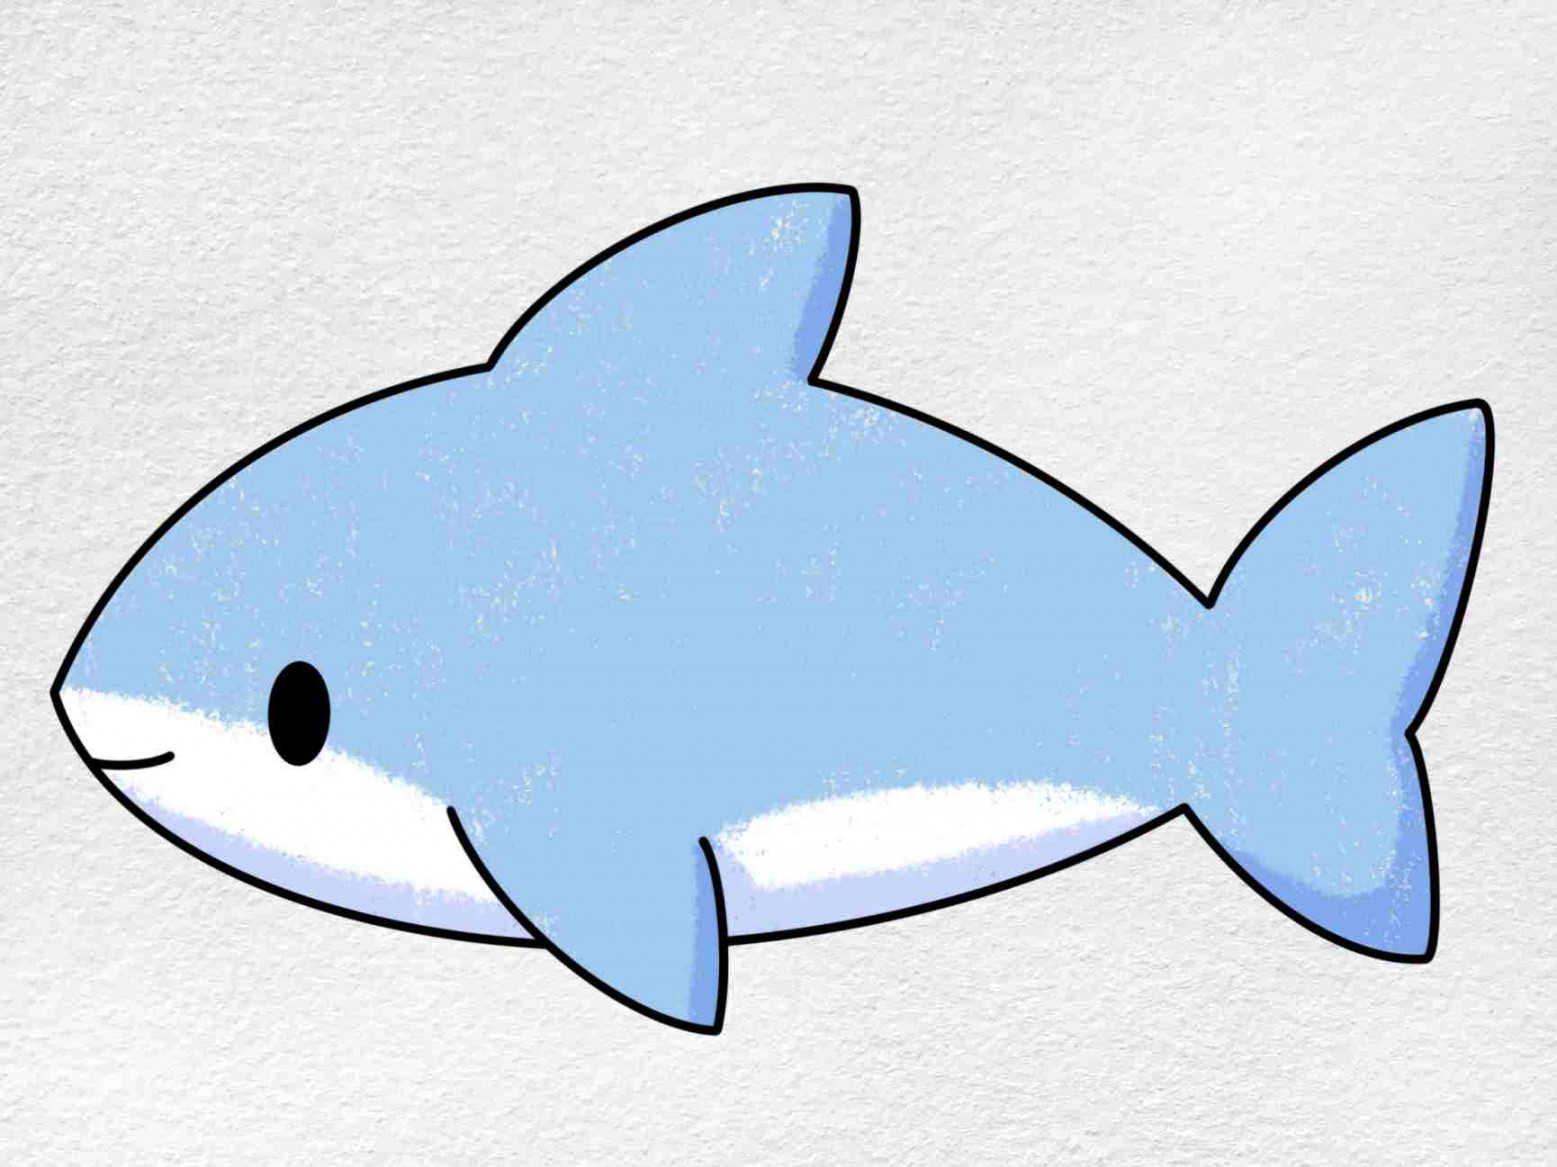 Cute Shark Drawing - HelloArtsy